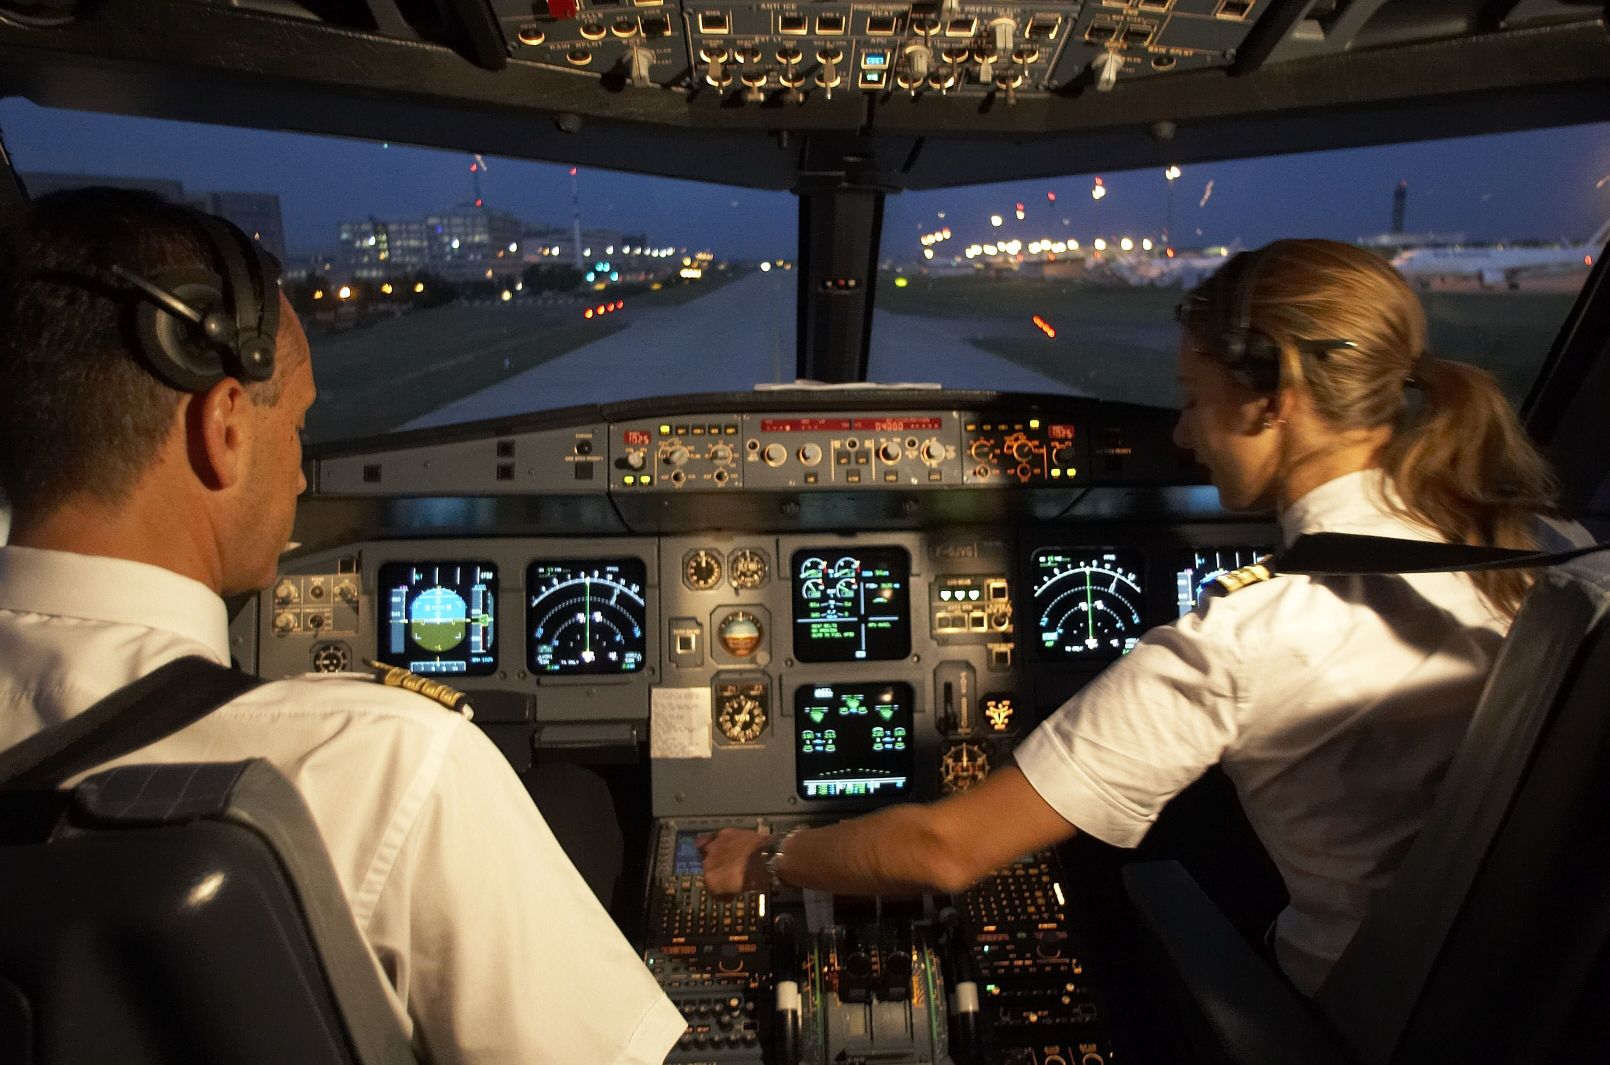 Fokozott biztonság: amit az egyik pilóta csinál, azt a másik ellenőrzi